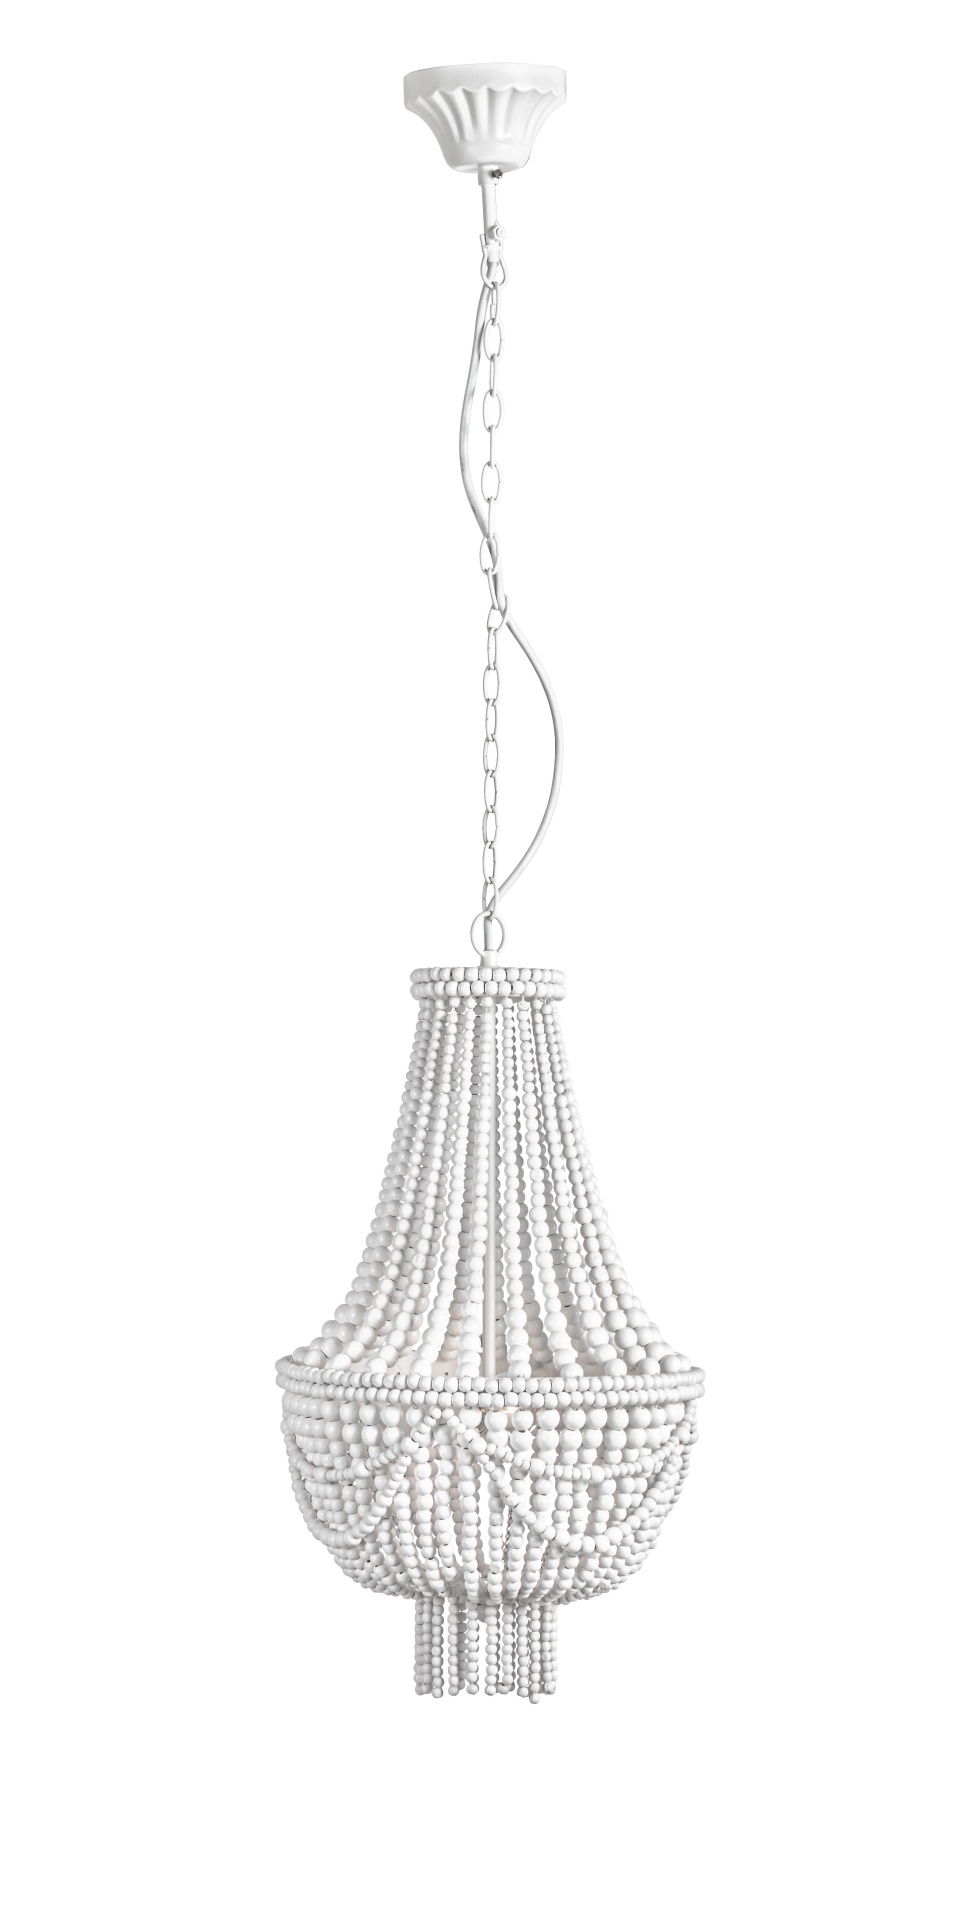 Die Hängeleuchte Pearls überzeugt mit ihrem klassischen Design. Gefertigt wurde sie aus Holzkugeln, welche einen weißen Farbton besitzt. Das Gestell ist aus Metall und hat eine weiße Farbe. Die Lampe besitzt eine Höhe von 51 cm.